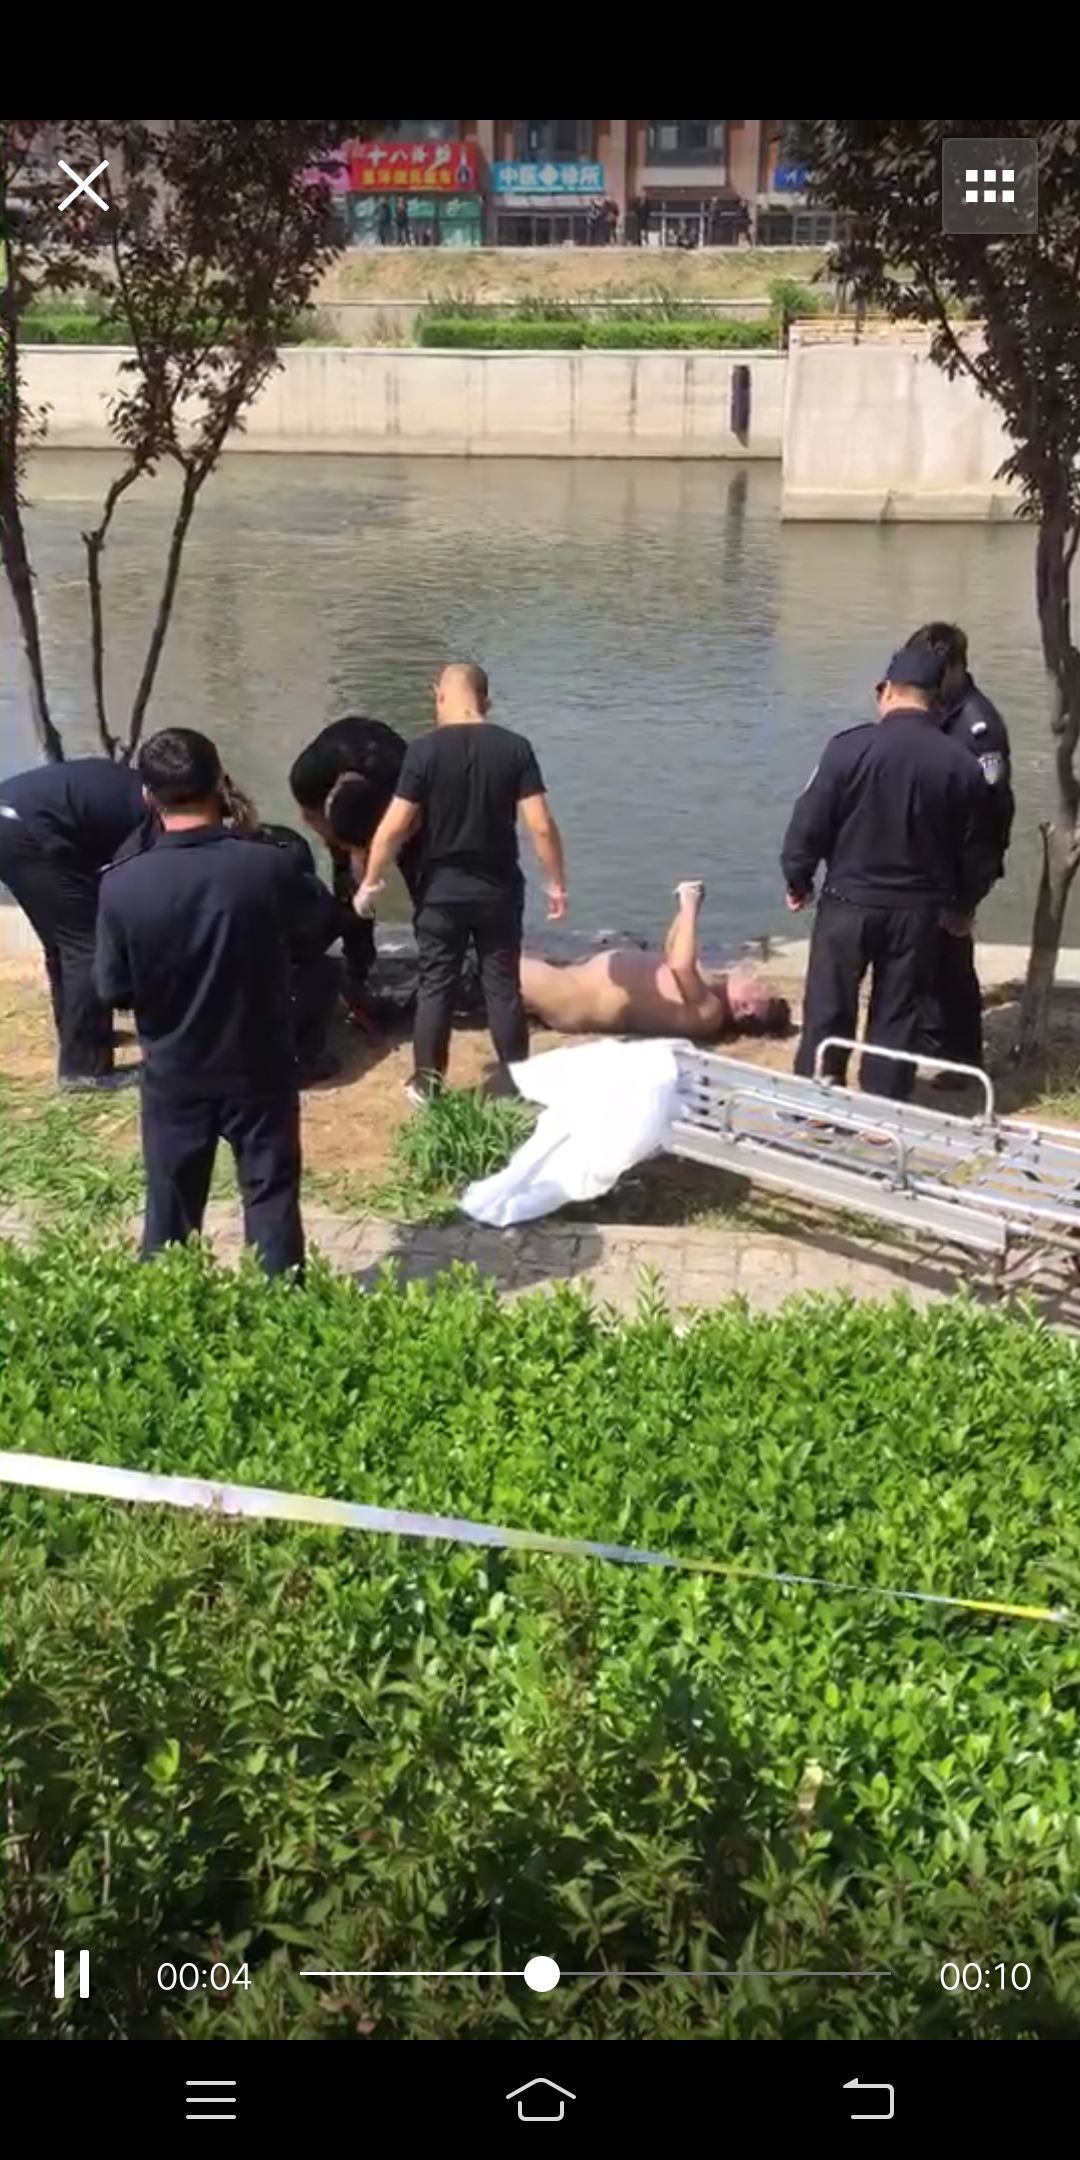 痛惜!唐山环城水系捞上一位溺水身亡的男子!